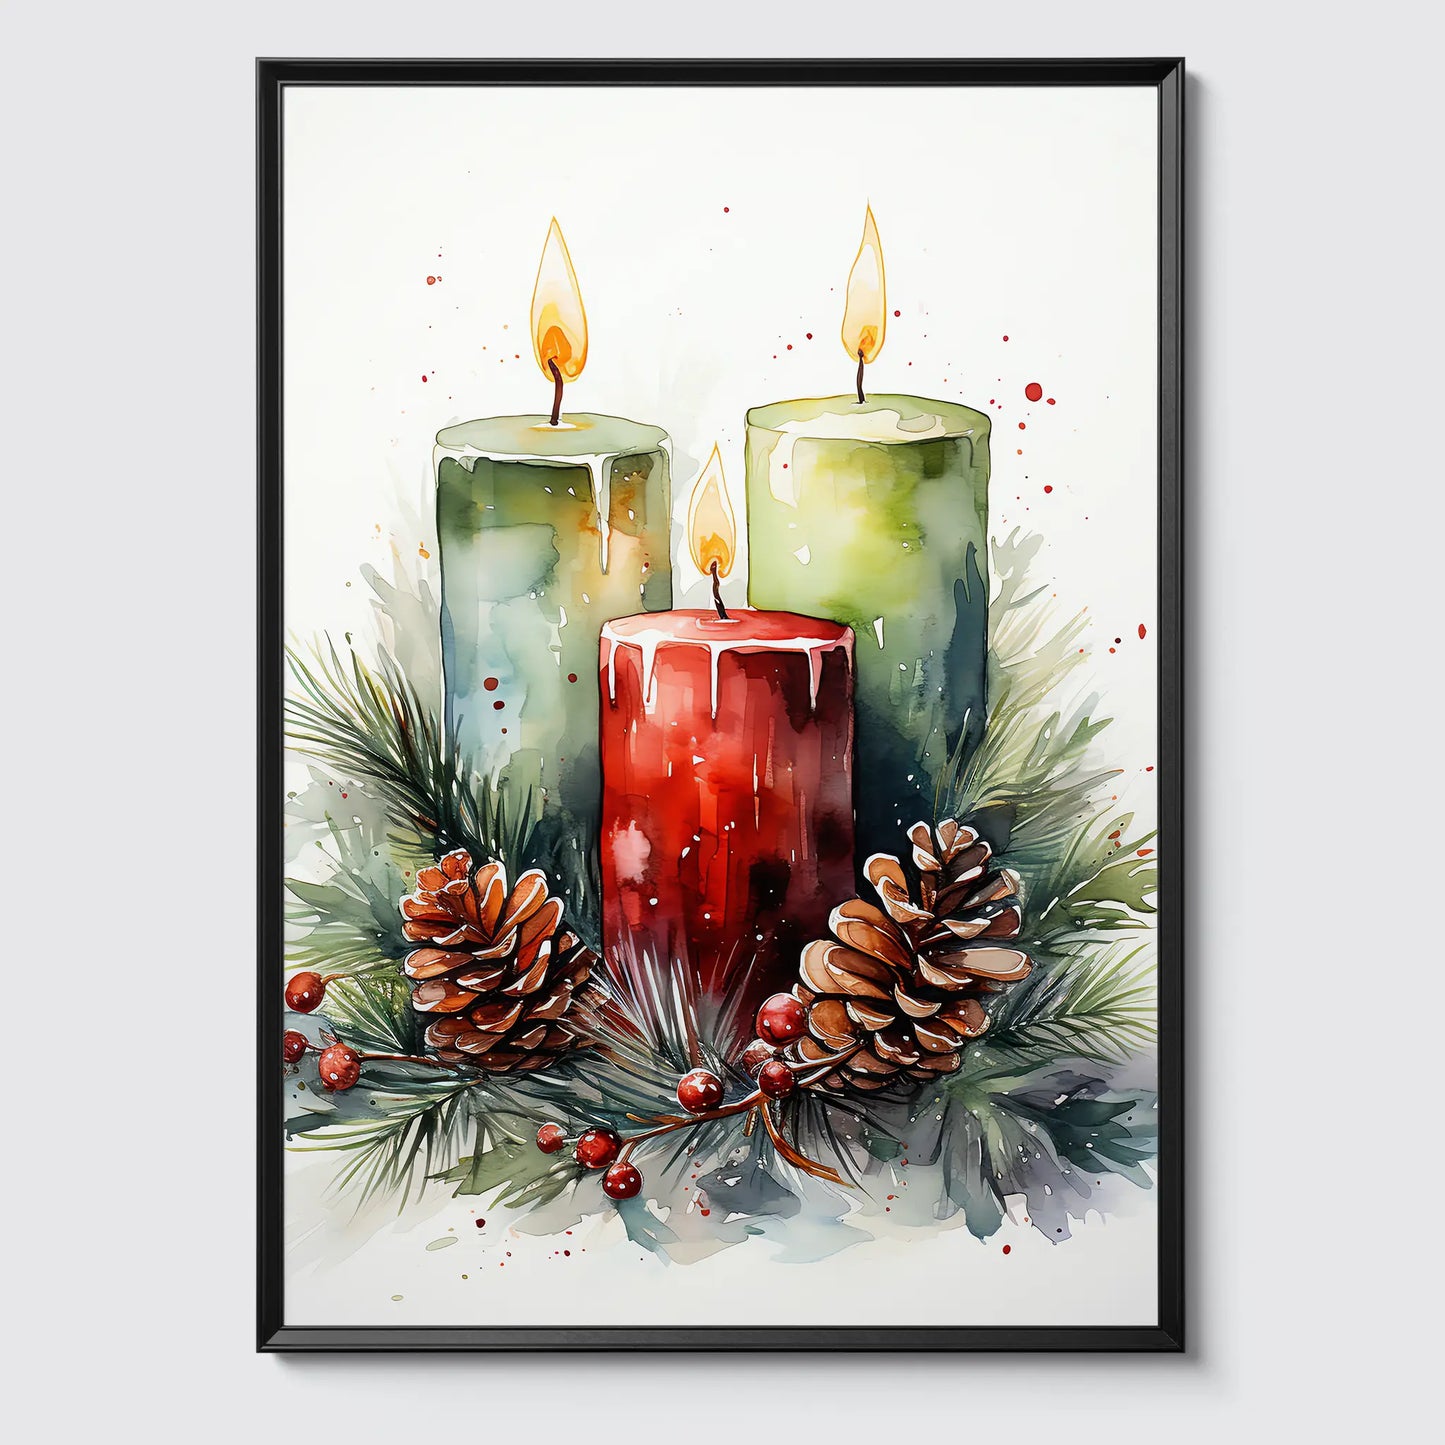 Weihnachtskerzen No 2 - Weihnachten - Kerzen - Poster